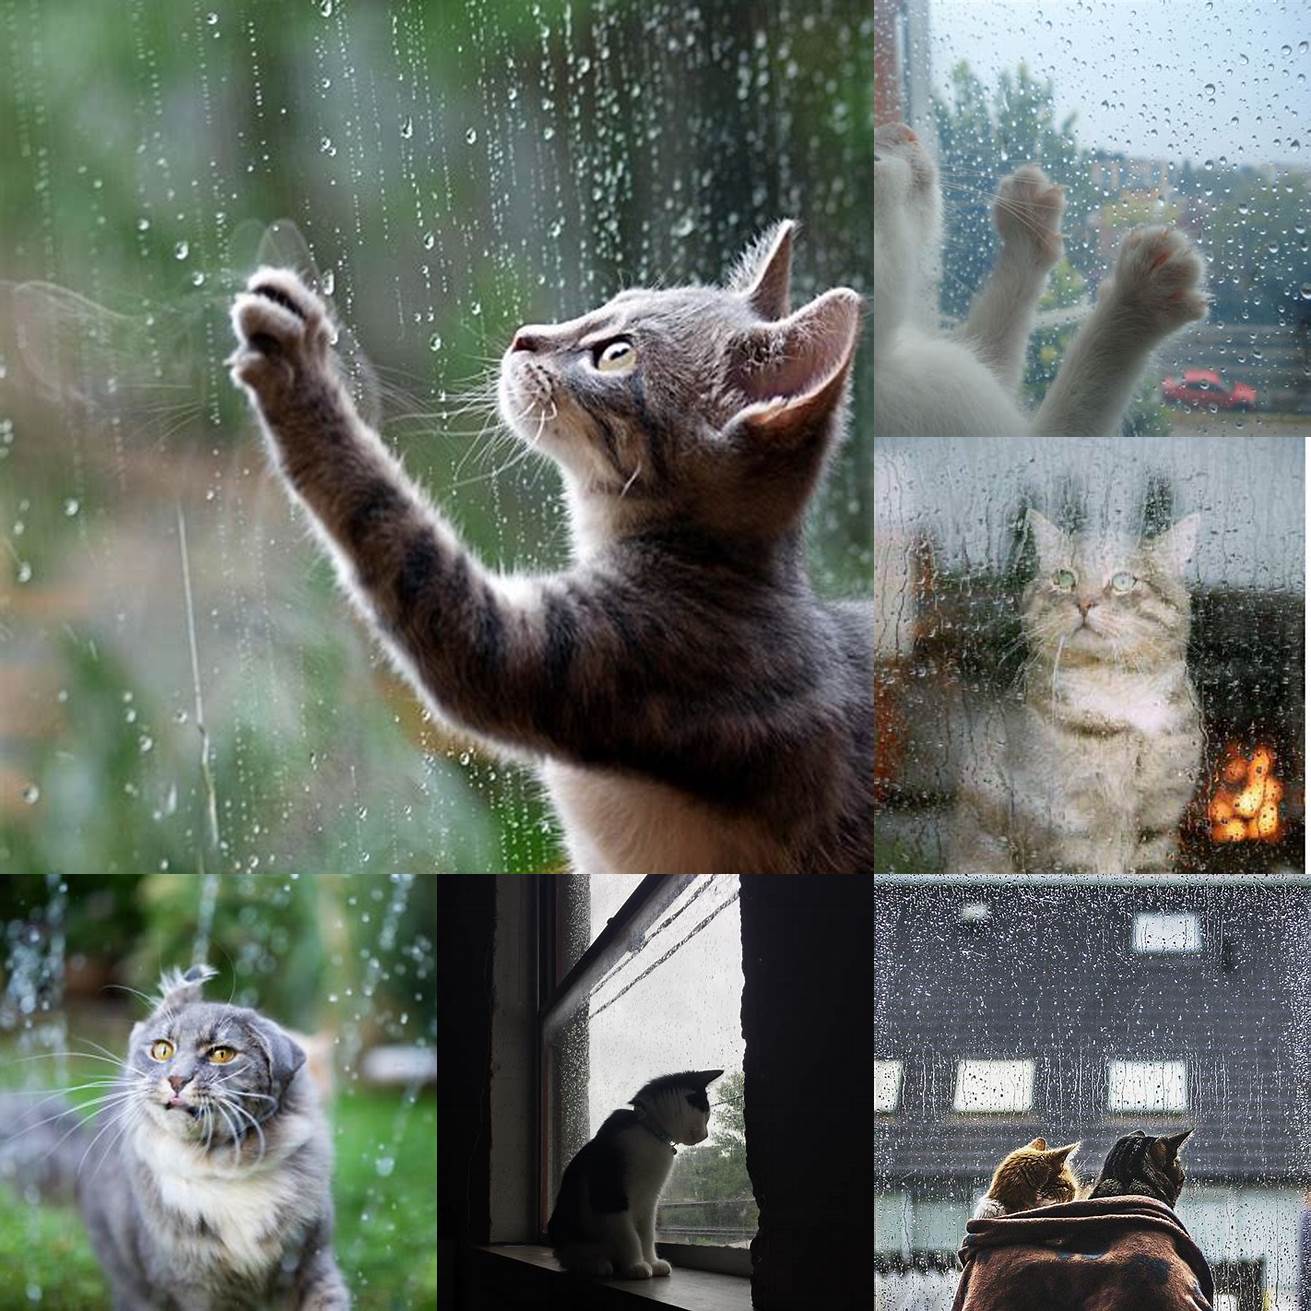 Cat watching the rain